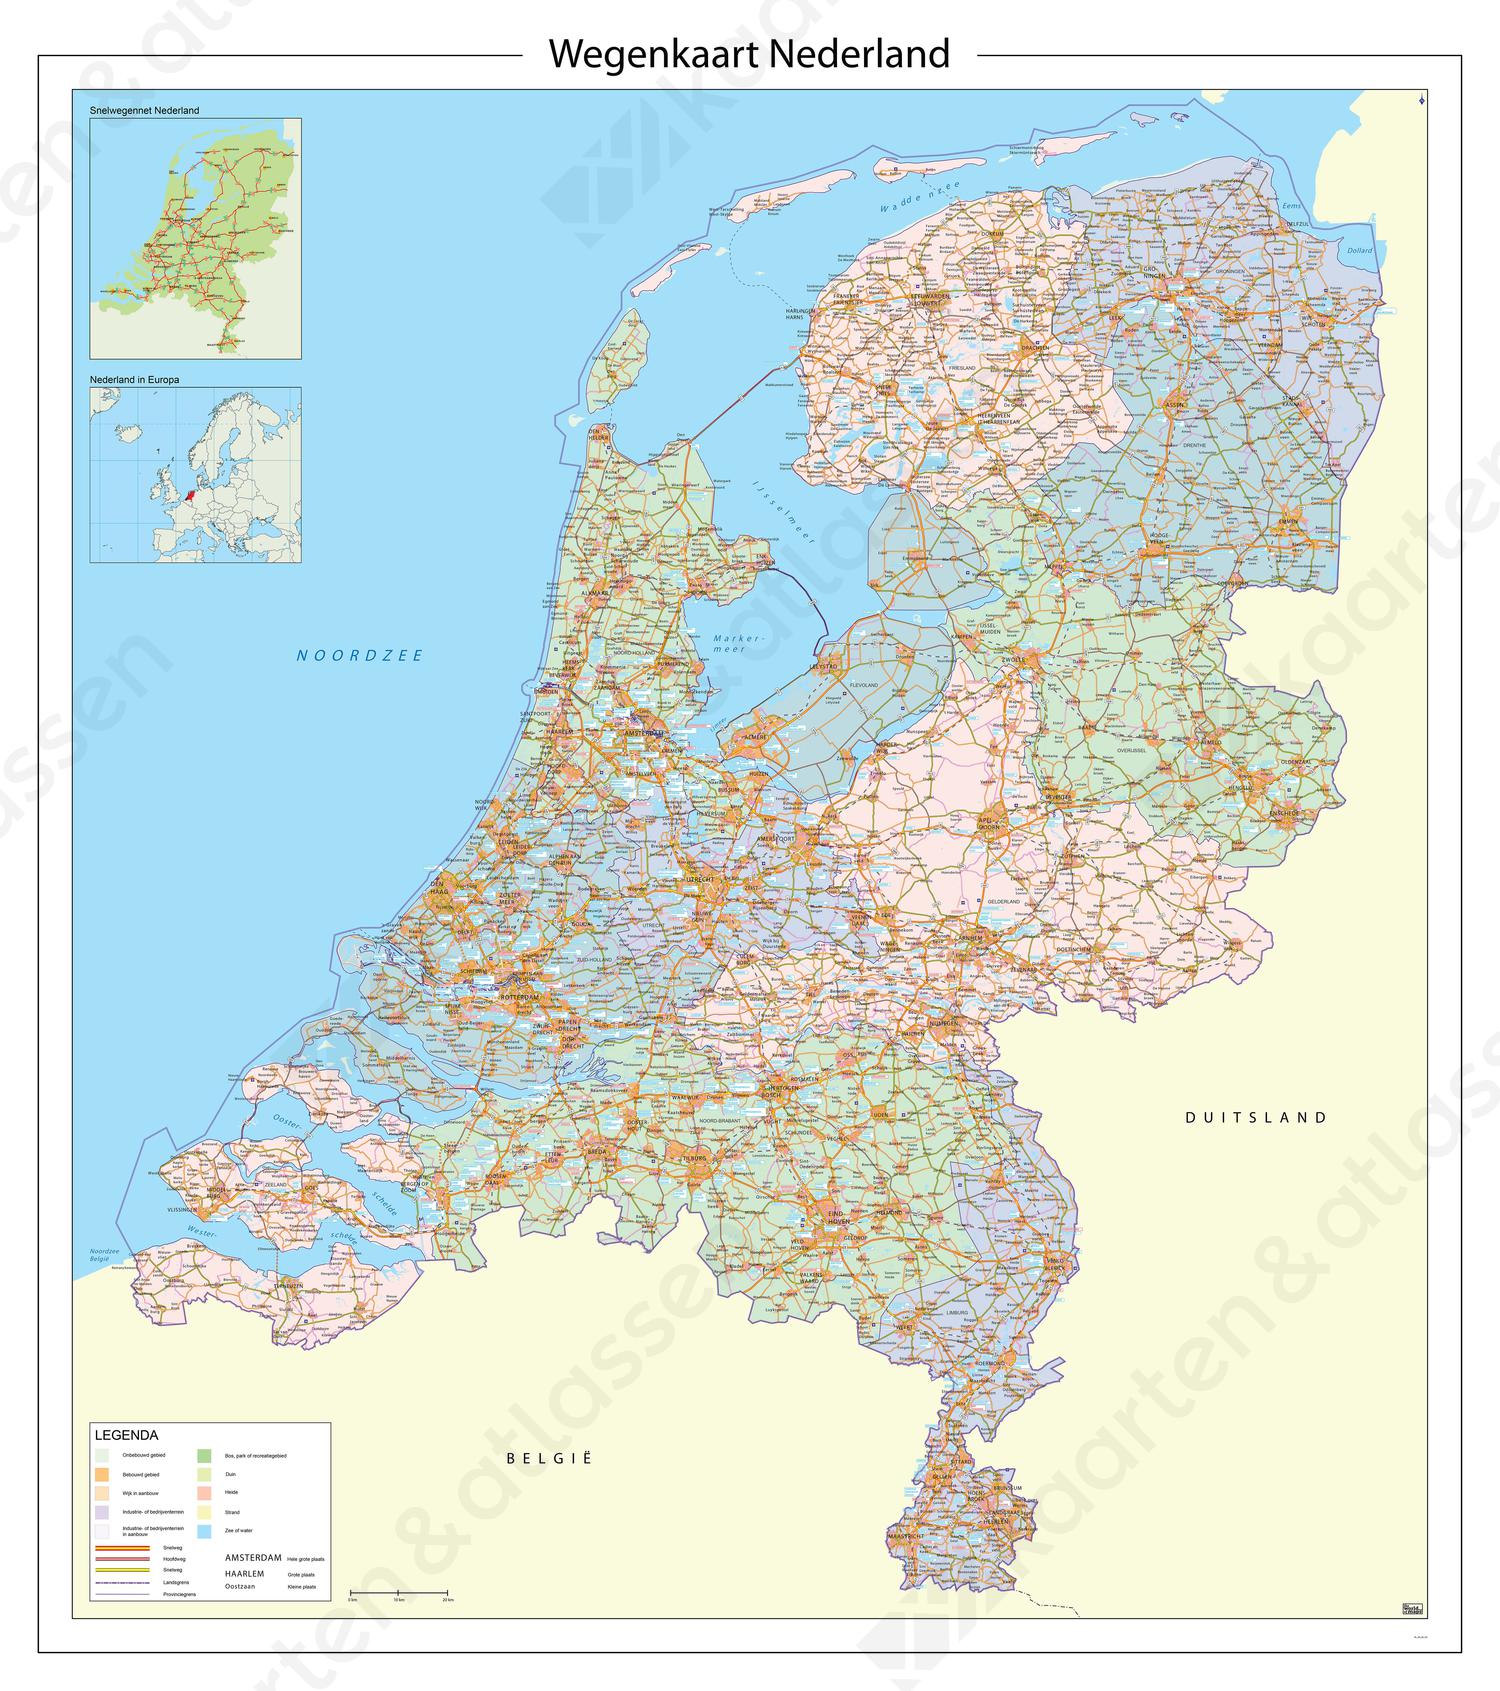 Digitale Wegenkaart Nederland met provincies en afritnamen